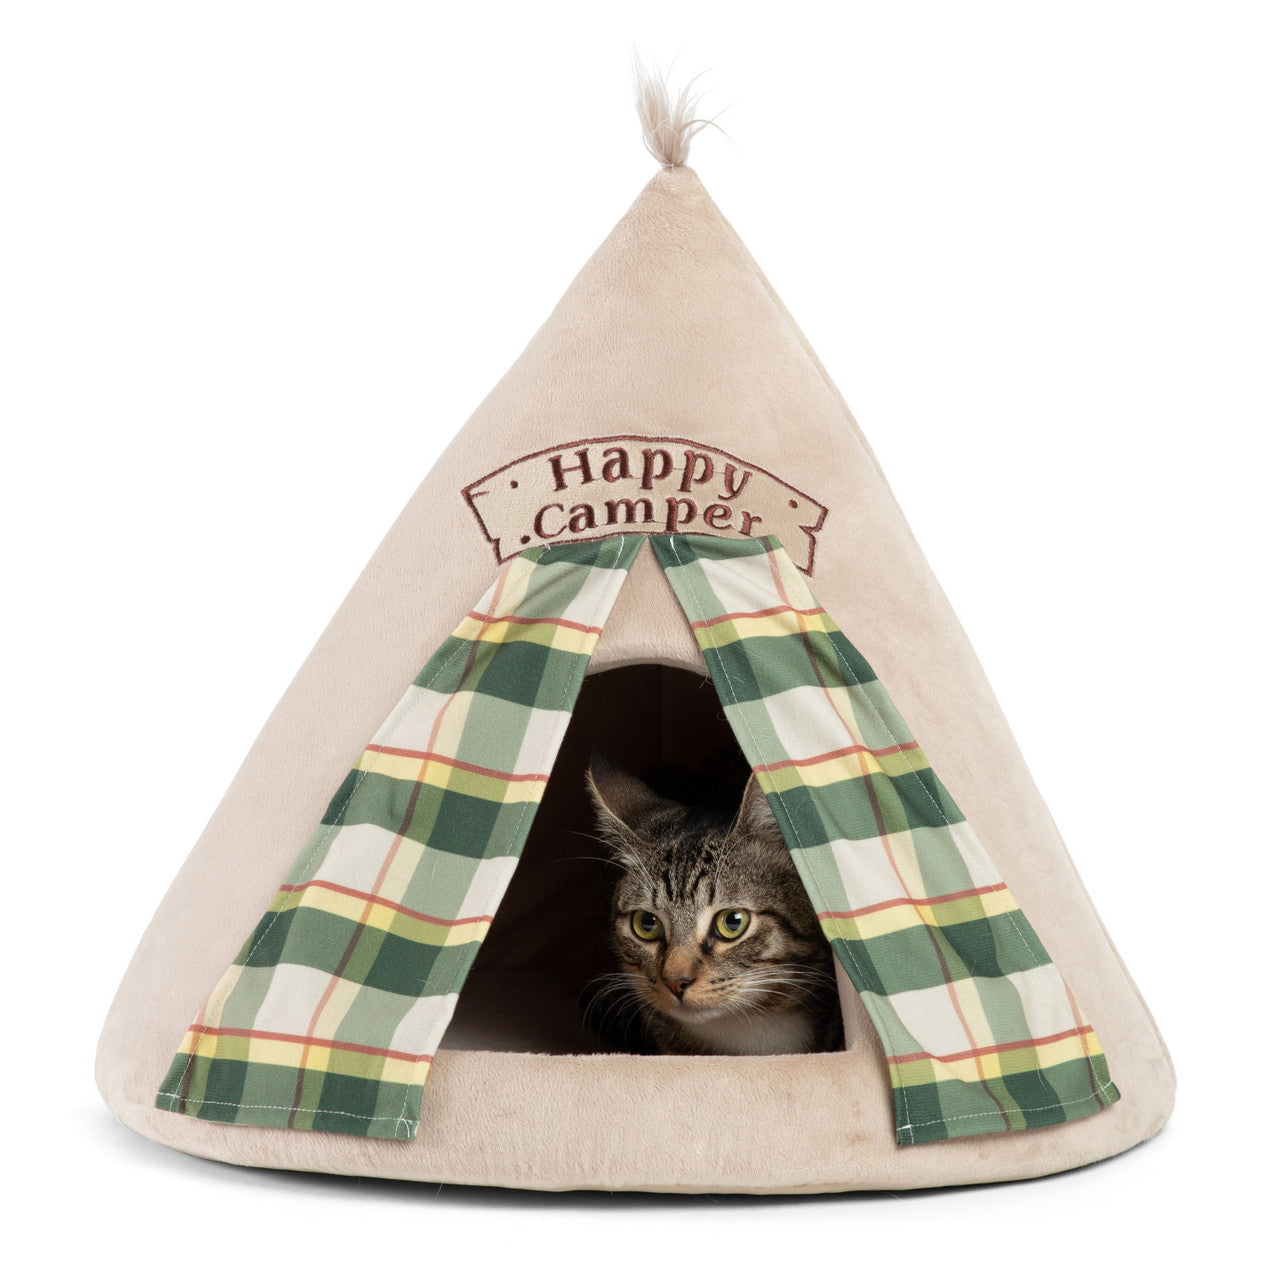 Happy Camper Hut Pet Bed